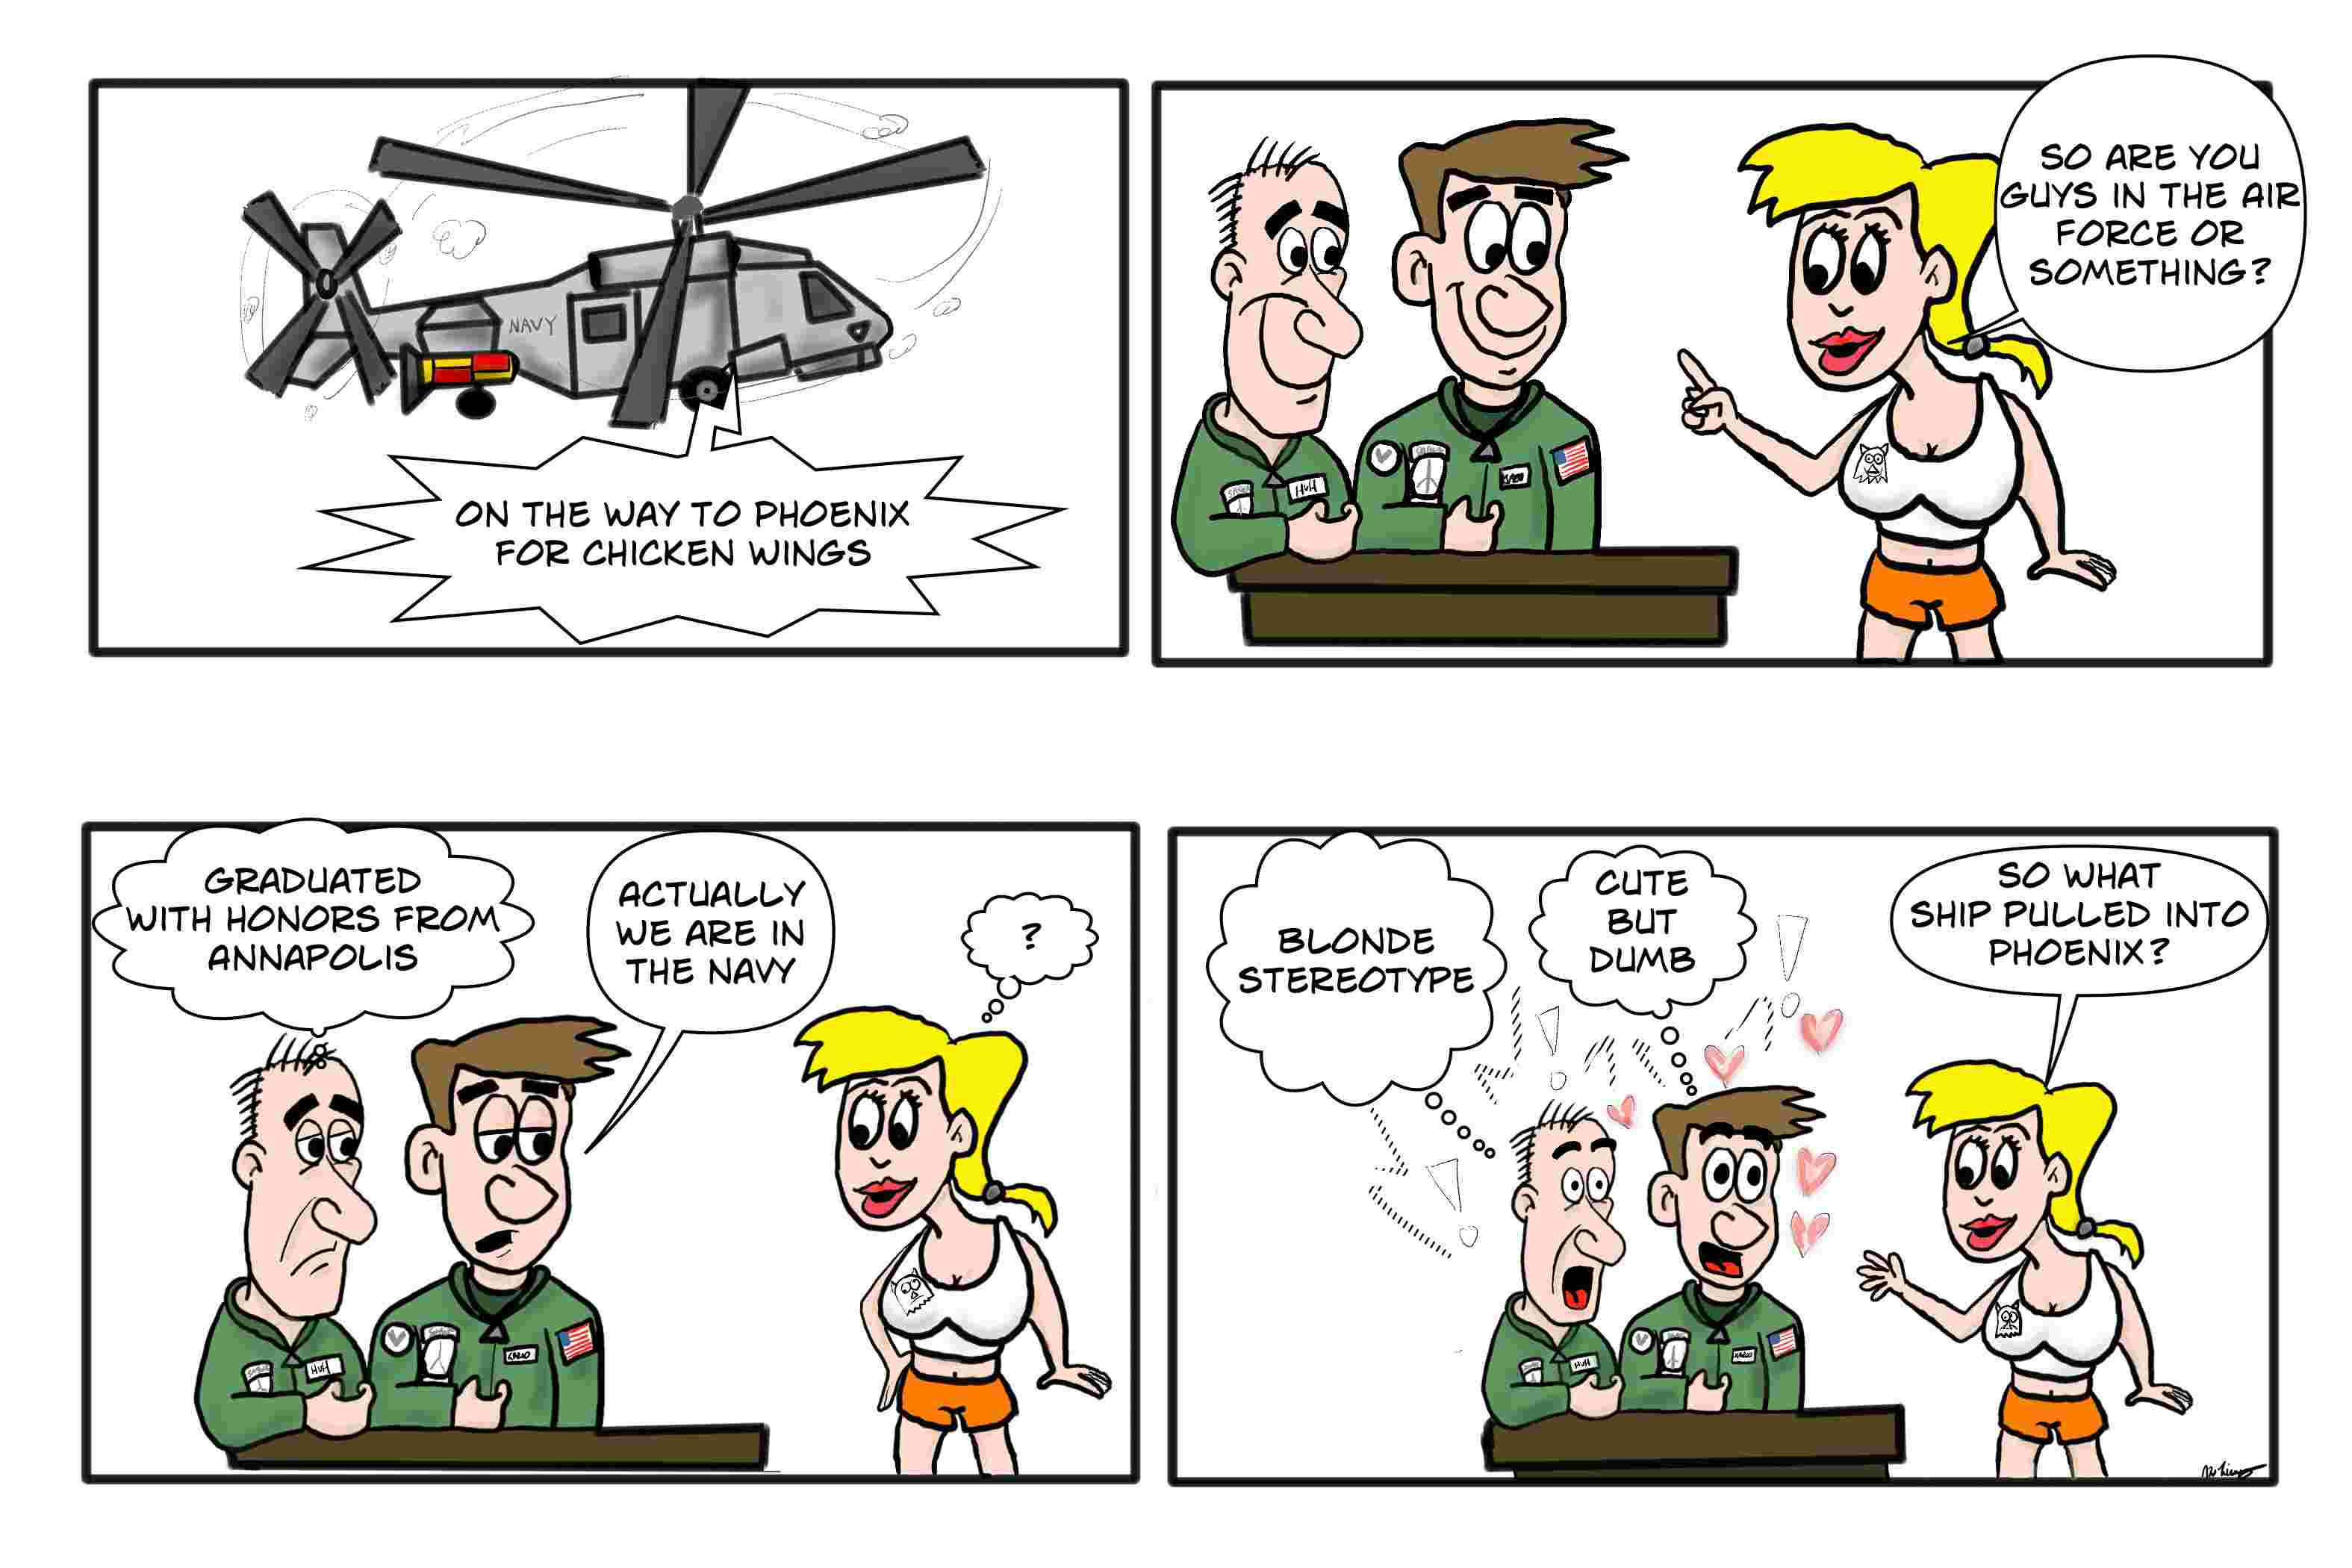 Navy-ship-in-phoenix-funny-joke